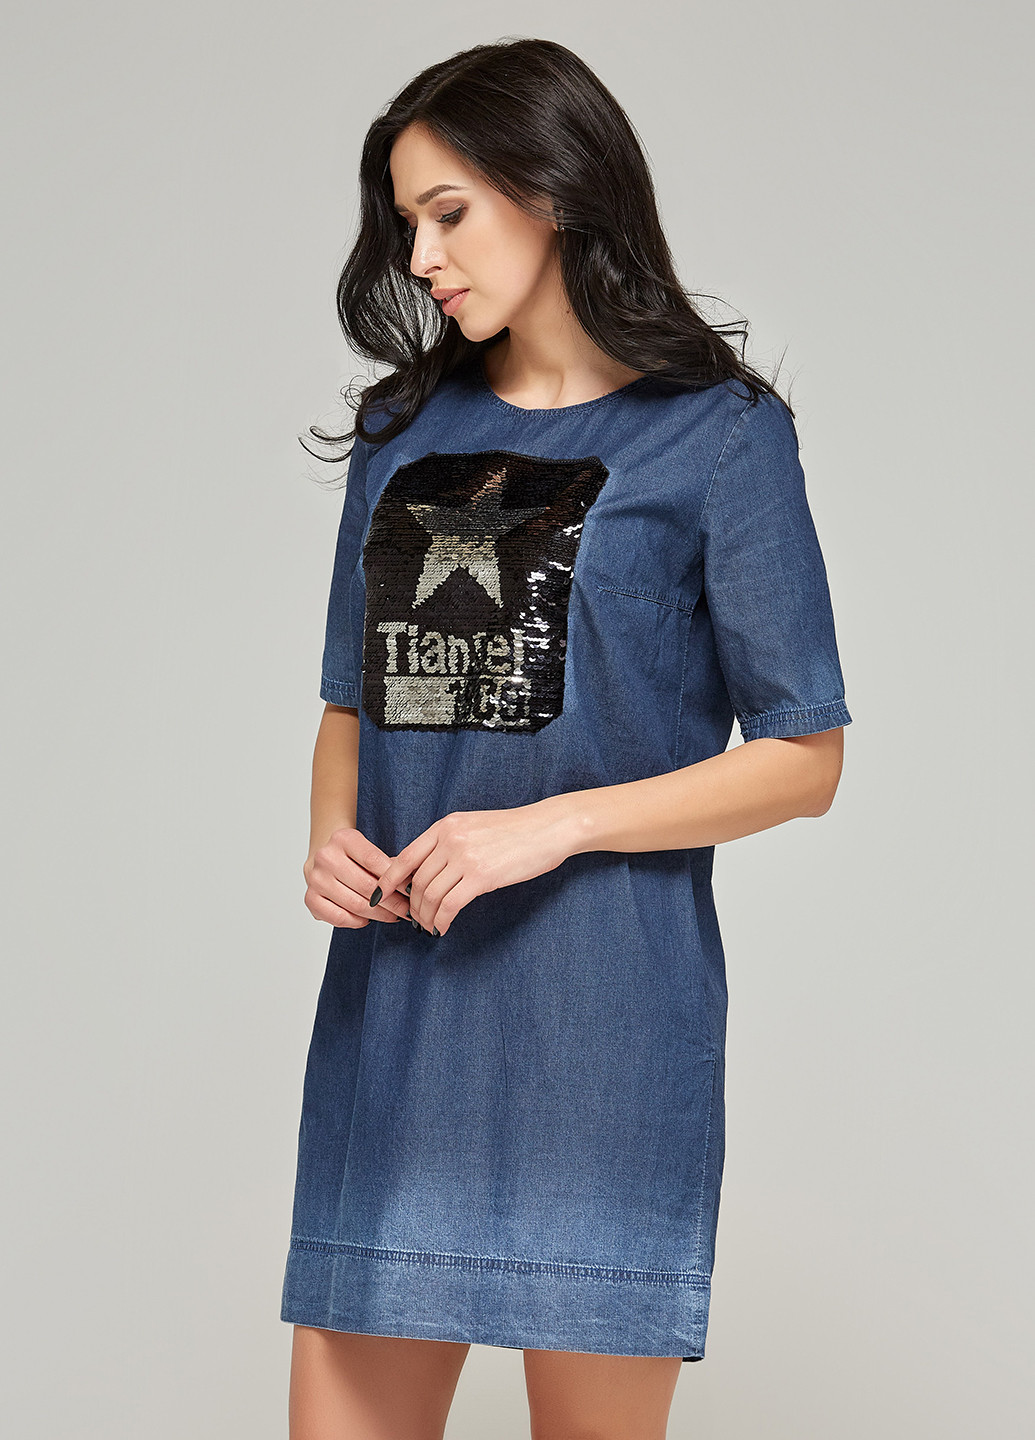 Синее джинсовое платье платье-футболка MN с рисунком